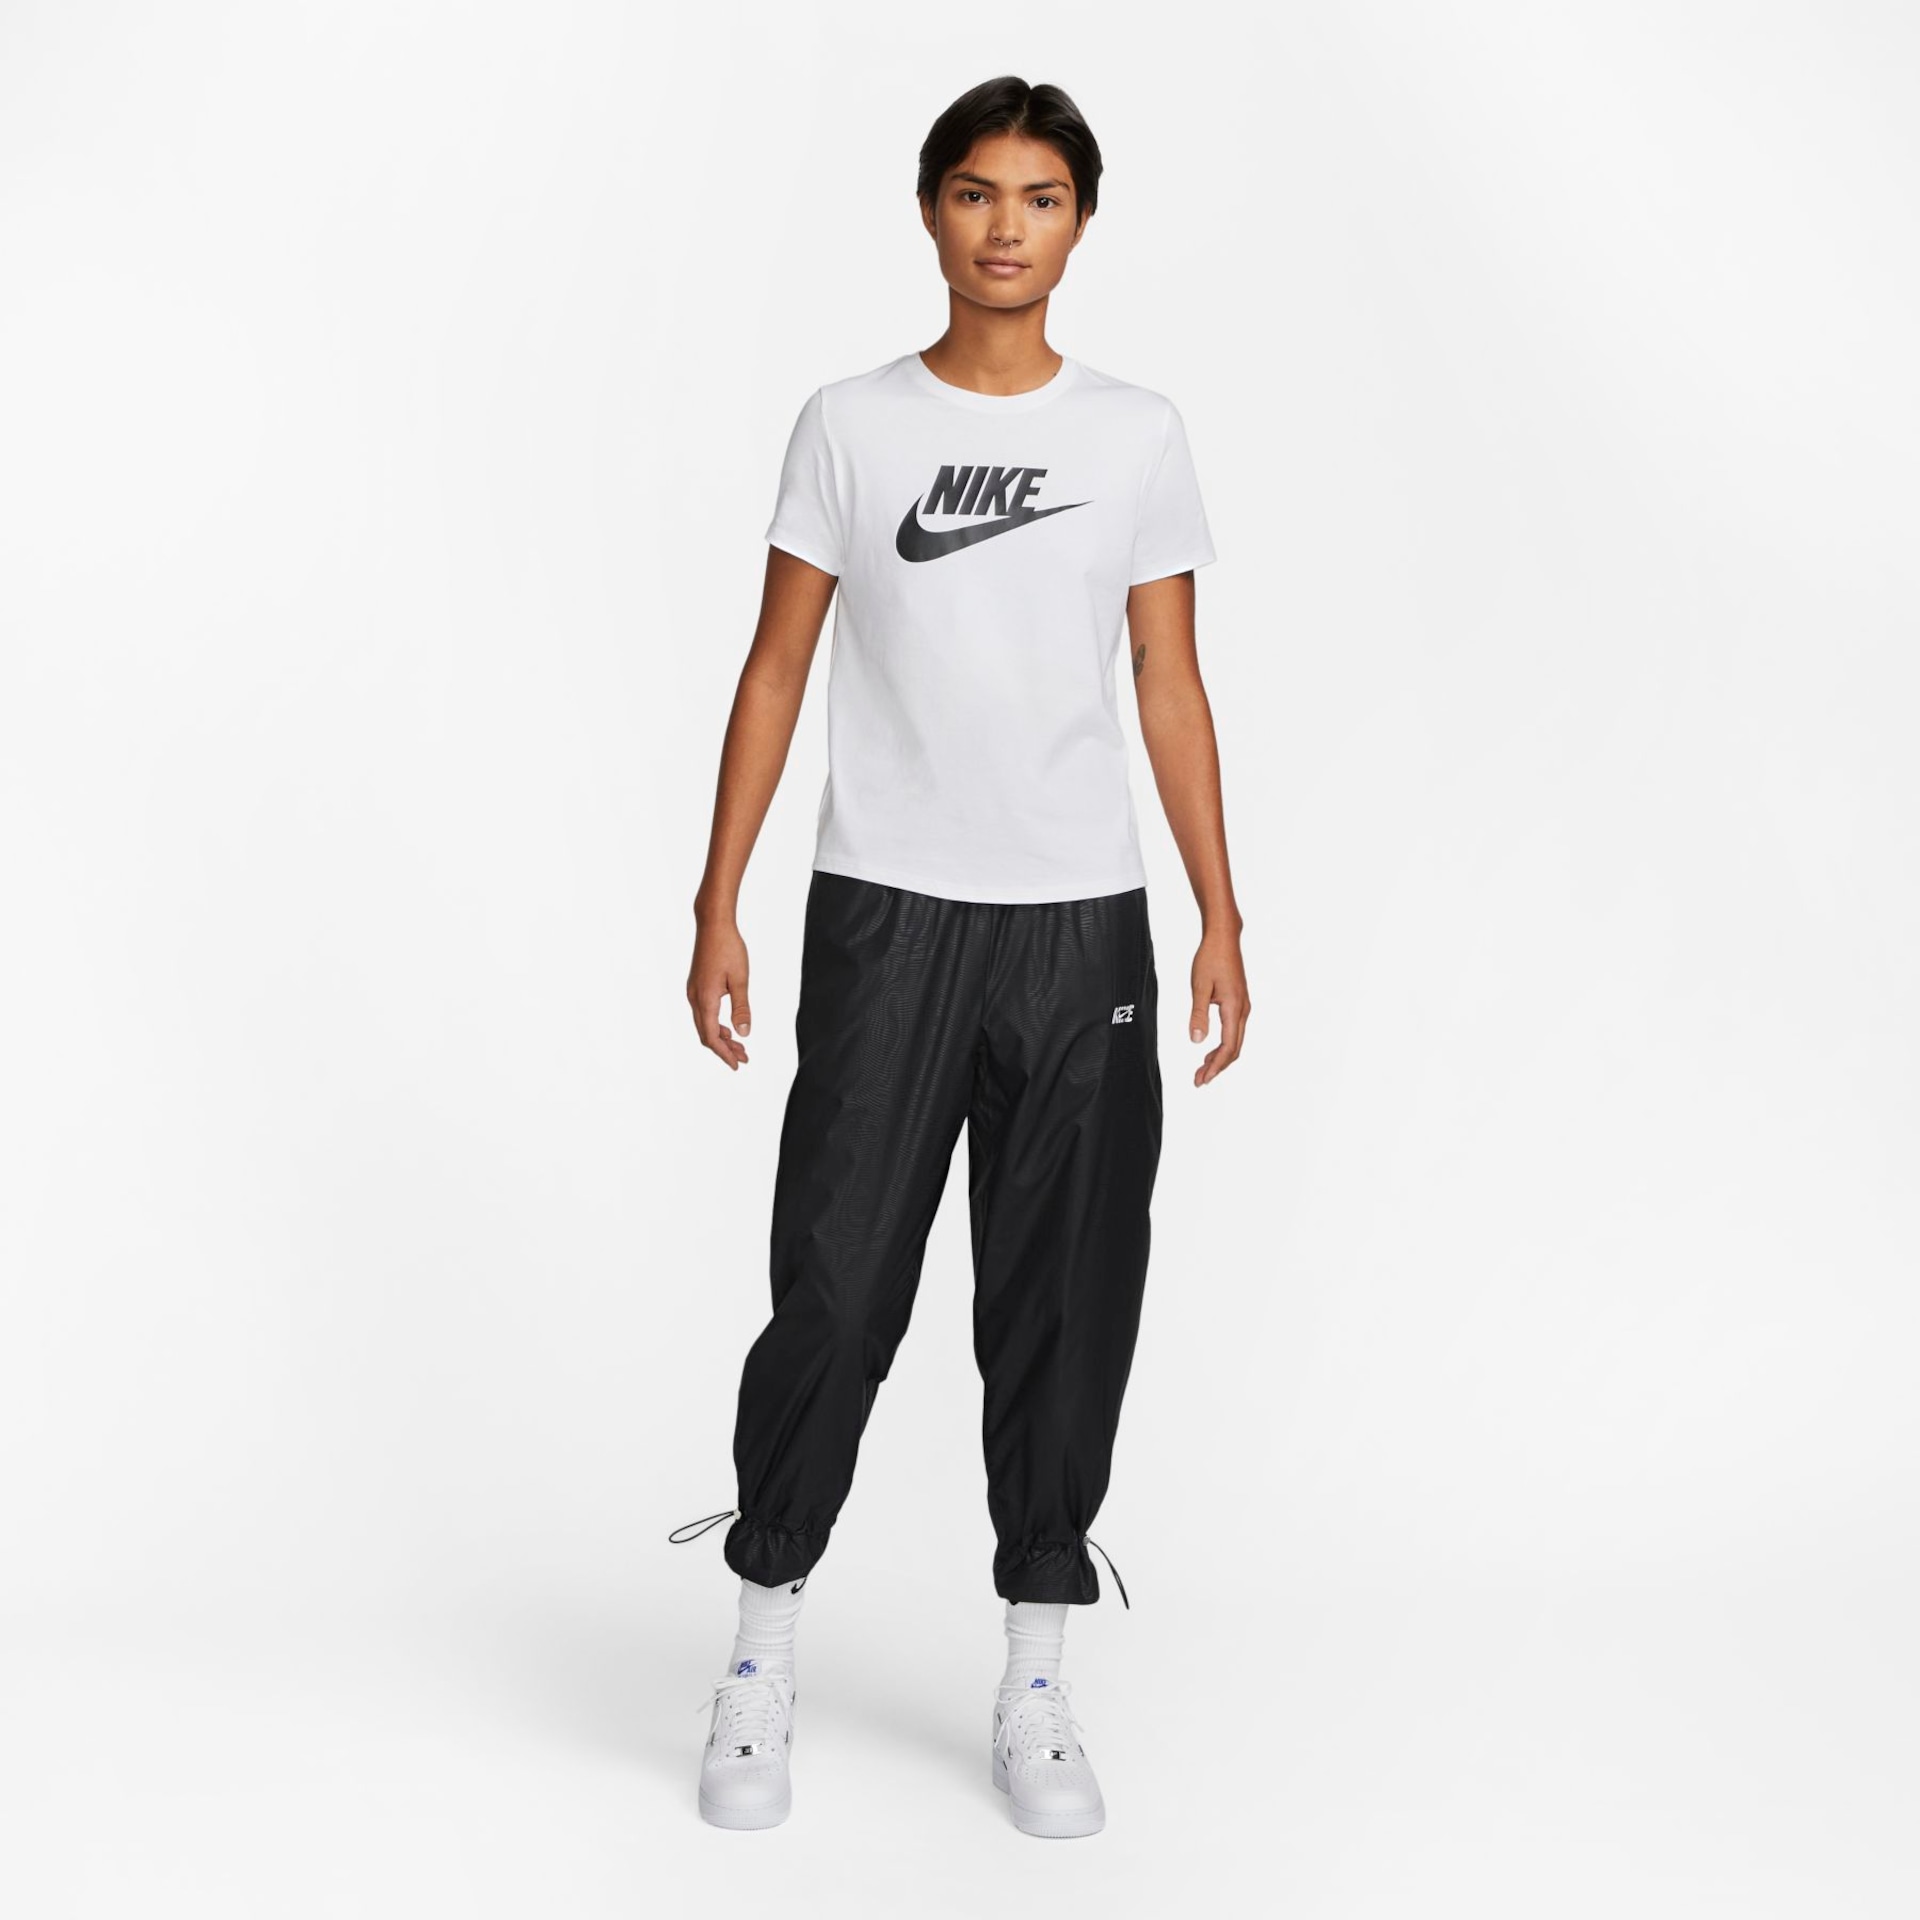 Camiseta Nike Sportswear Essentials Feminina - Foto 4